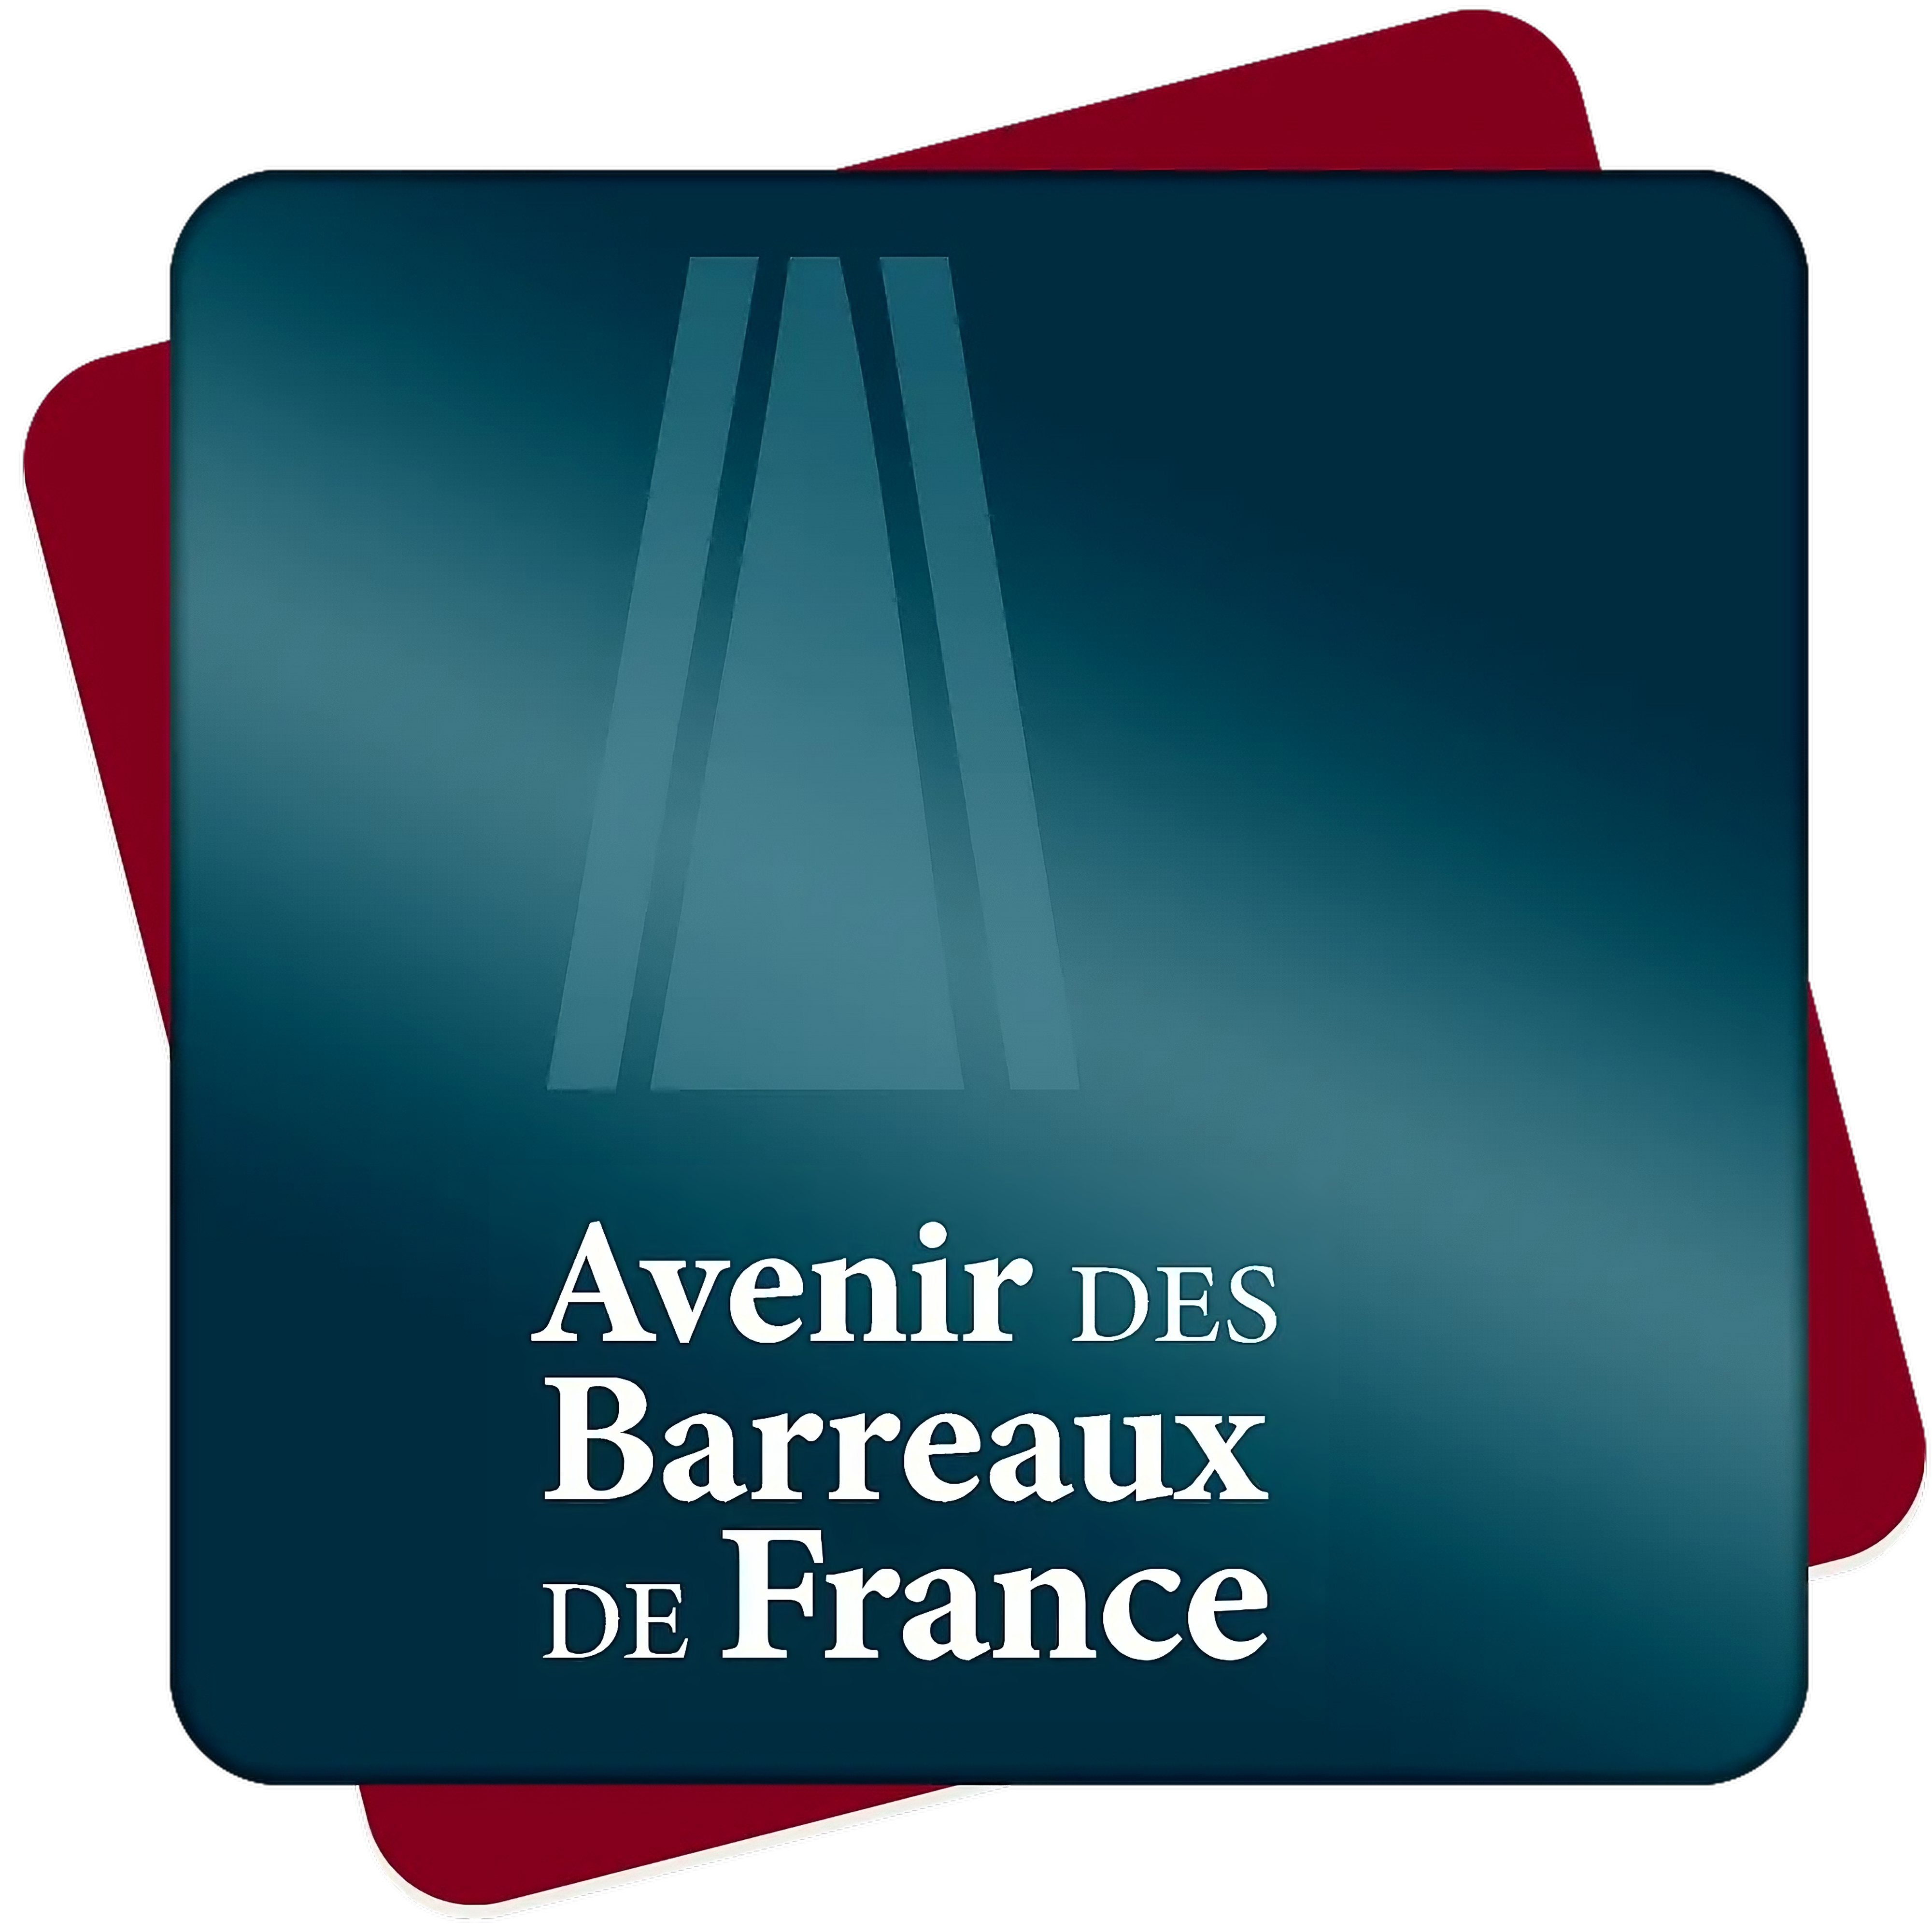 ABF Avenir des Barreaux de France